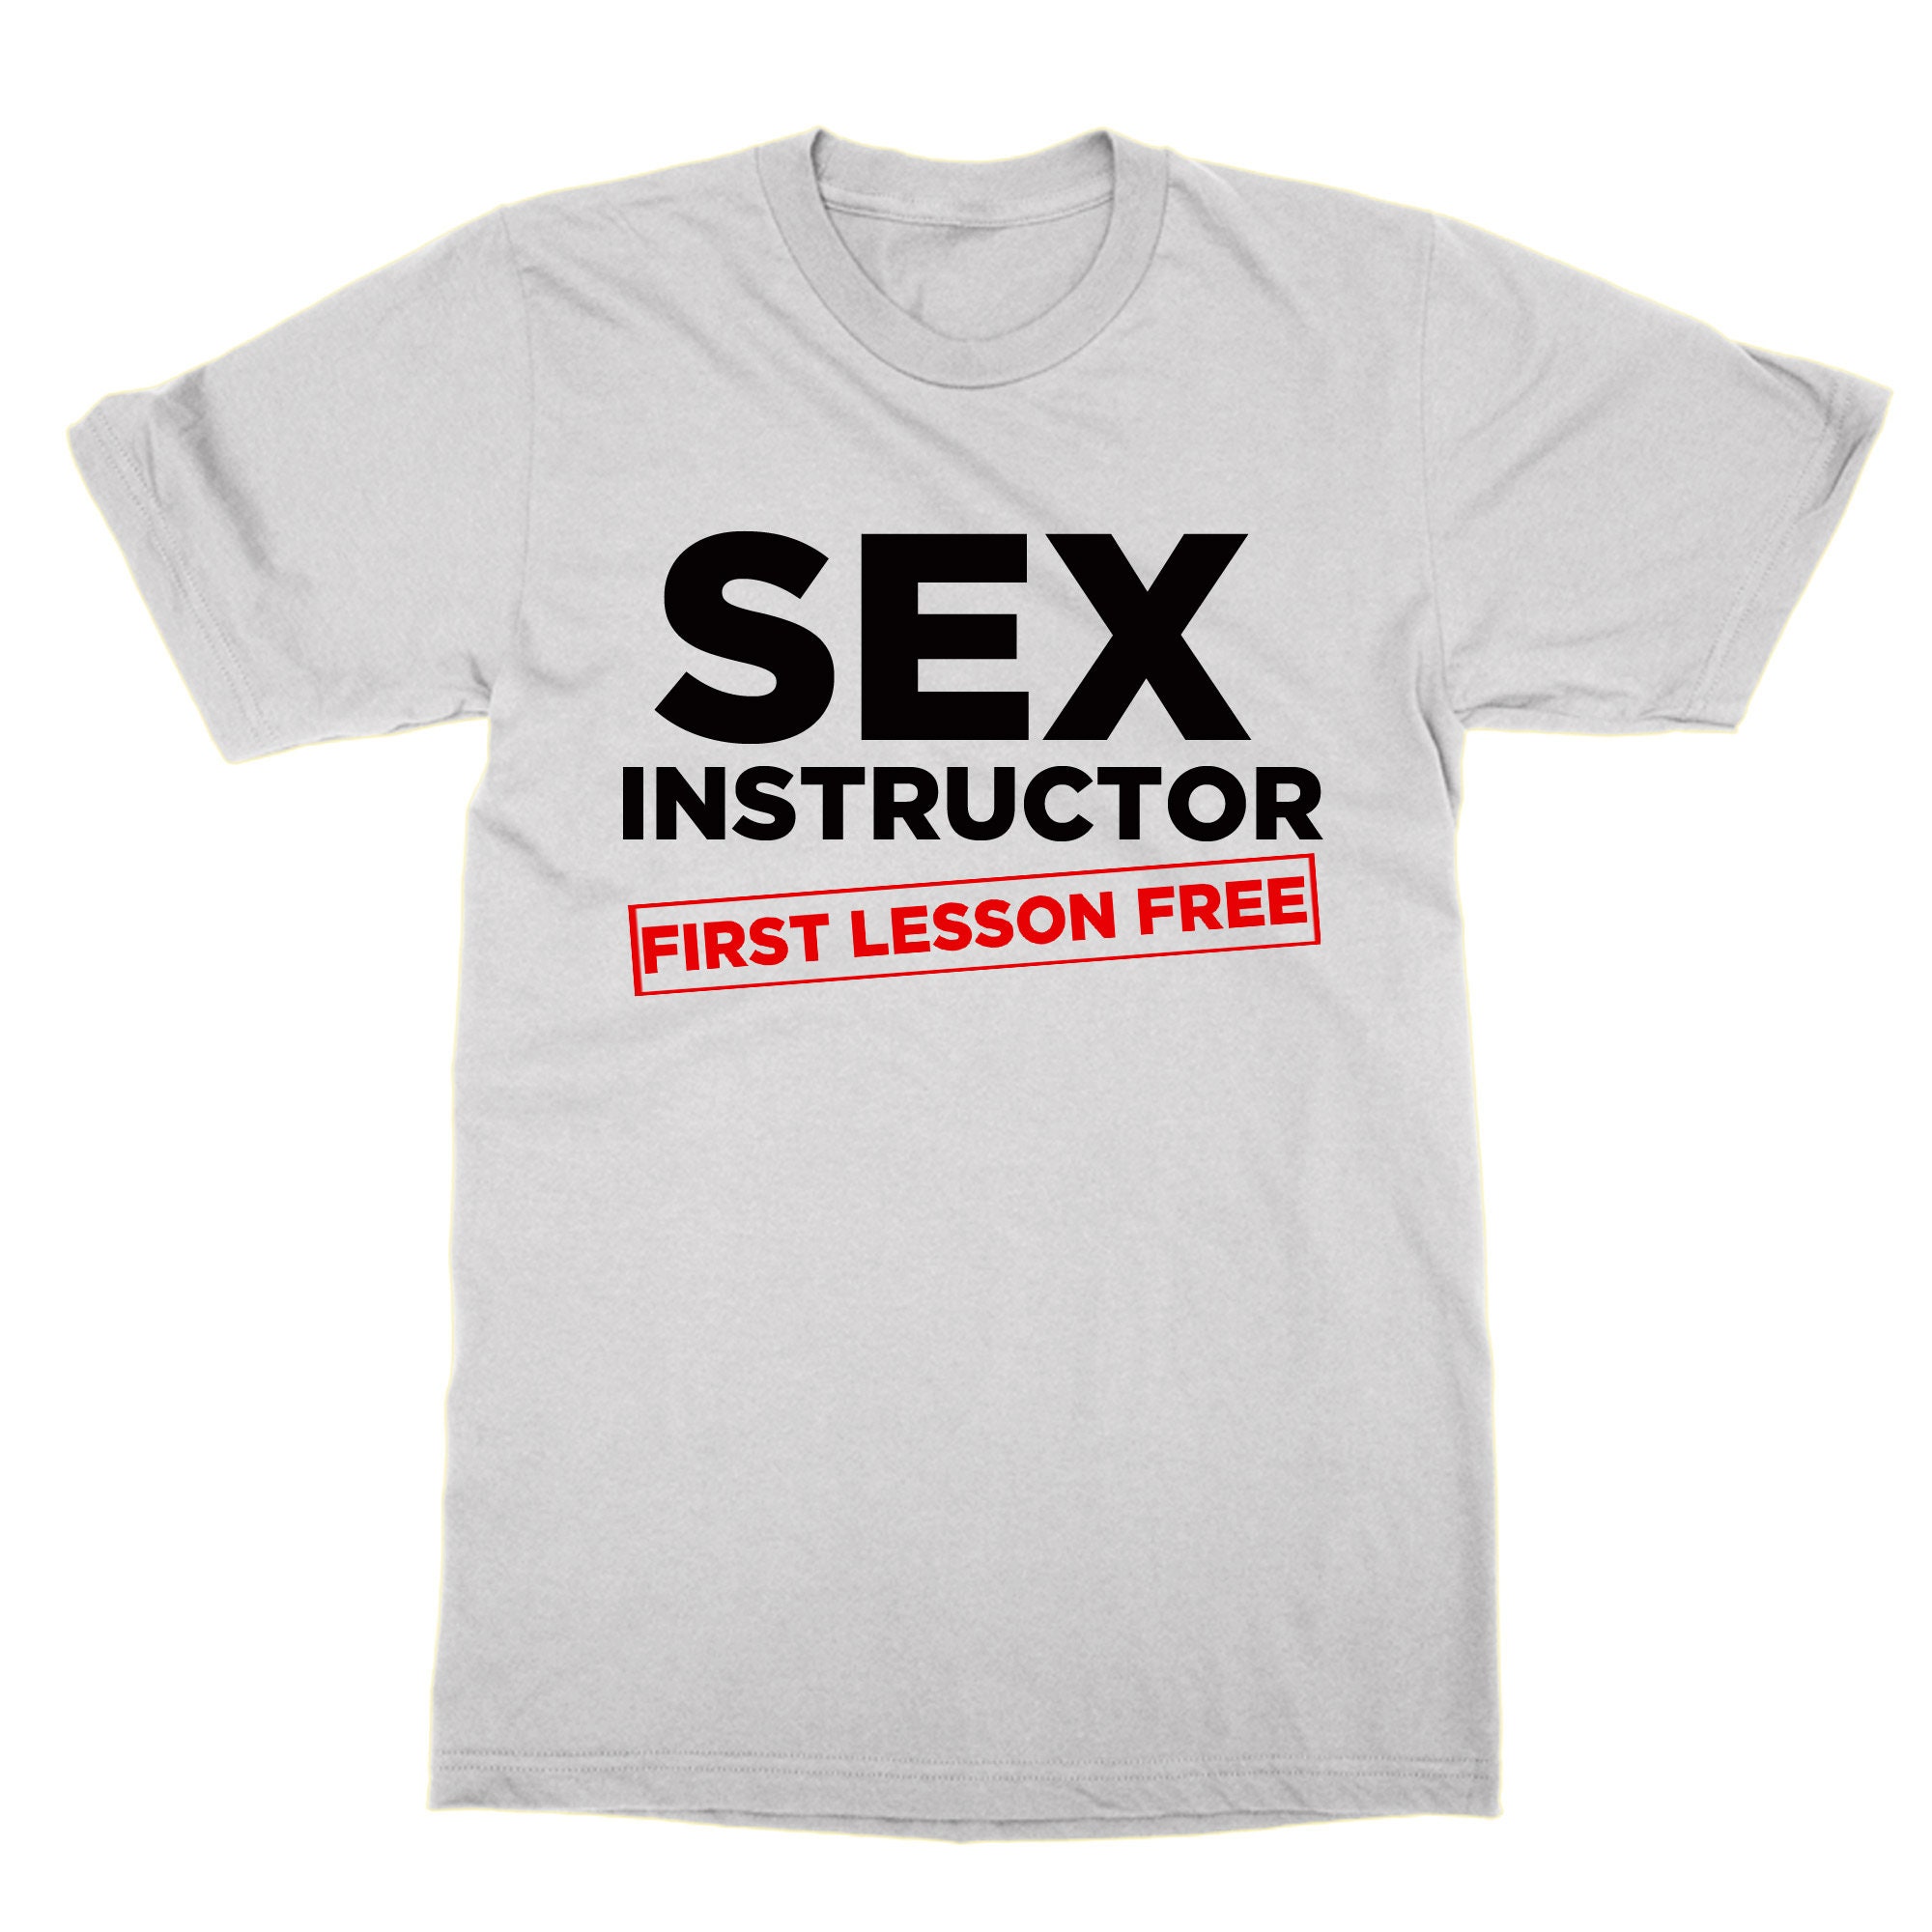 Sex Instructor Eerste Les Gratis t-shirt grap nieuwigheid